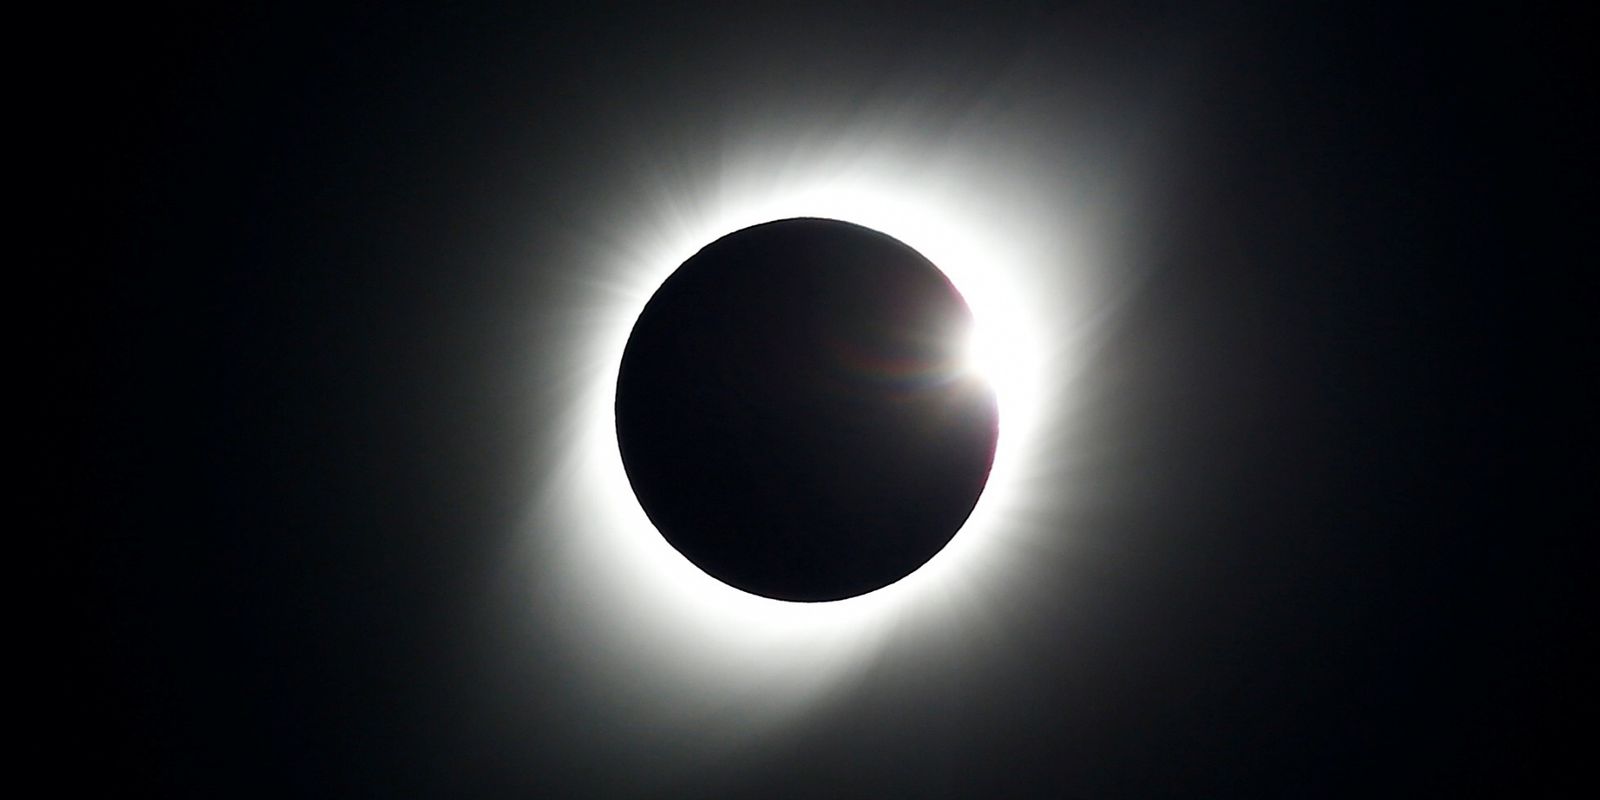 Se debe tener precaución al observar el eclipse solar para evitar daños oculares.